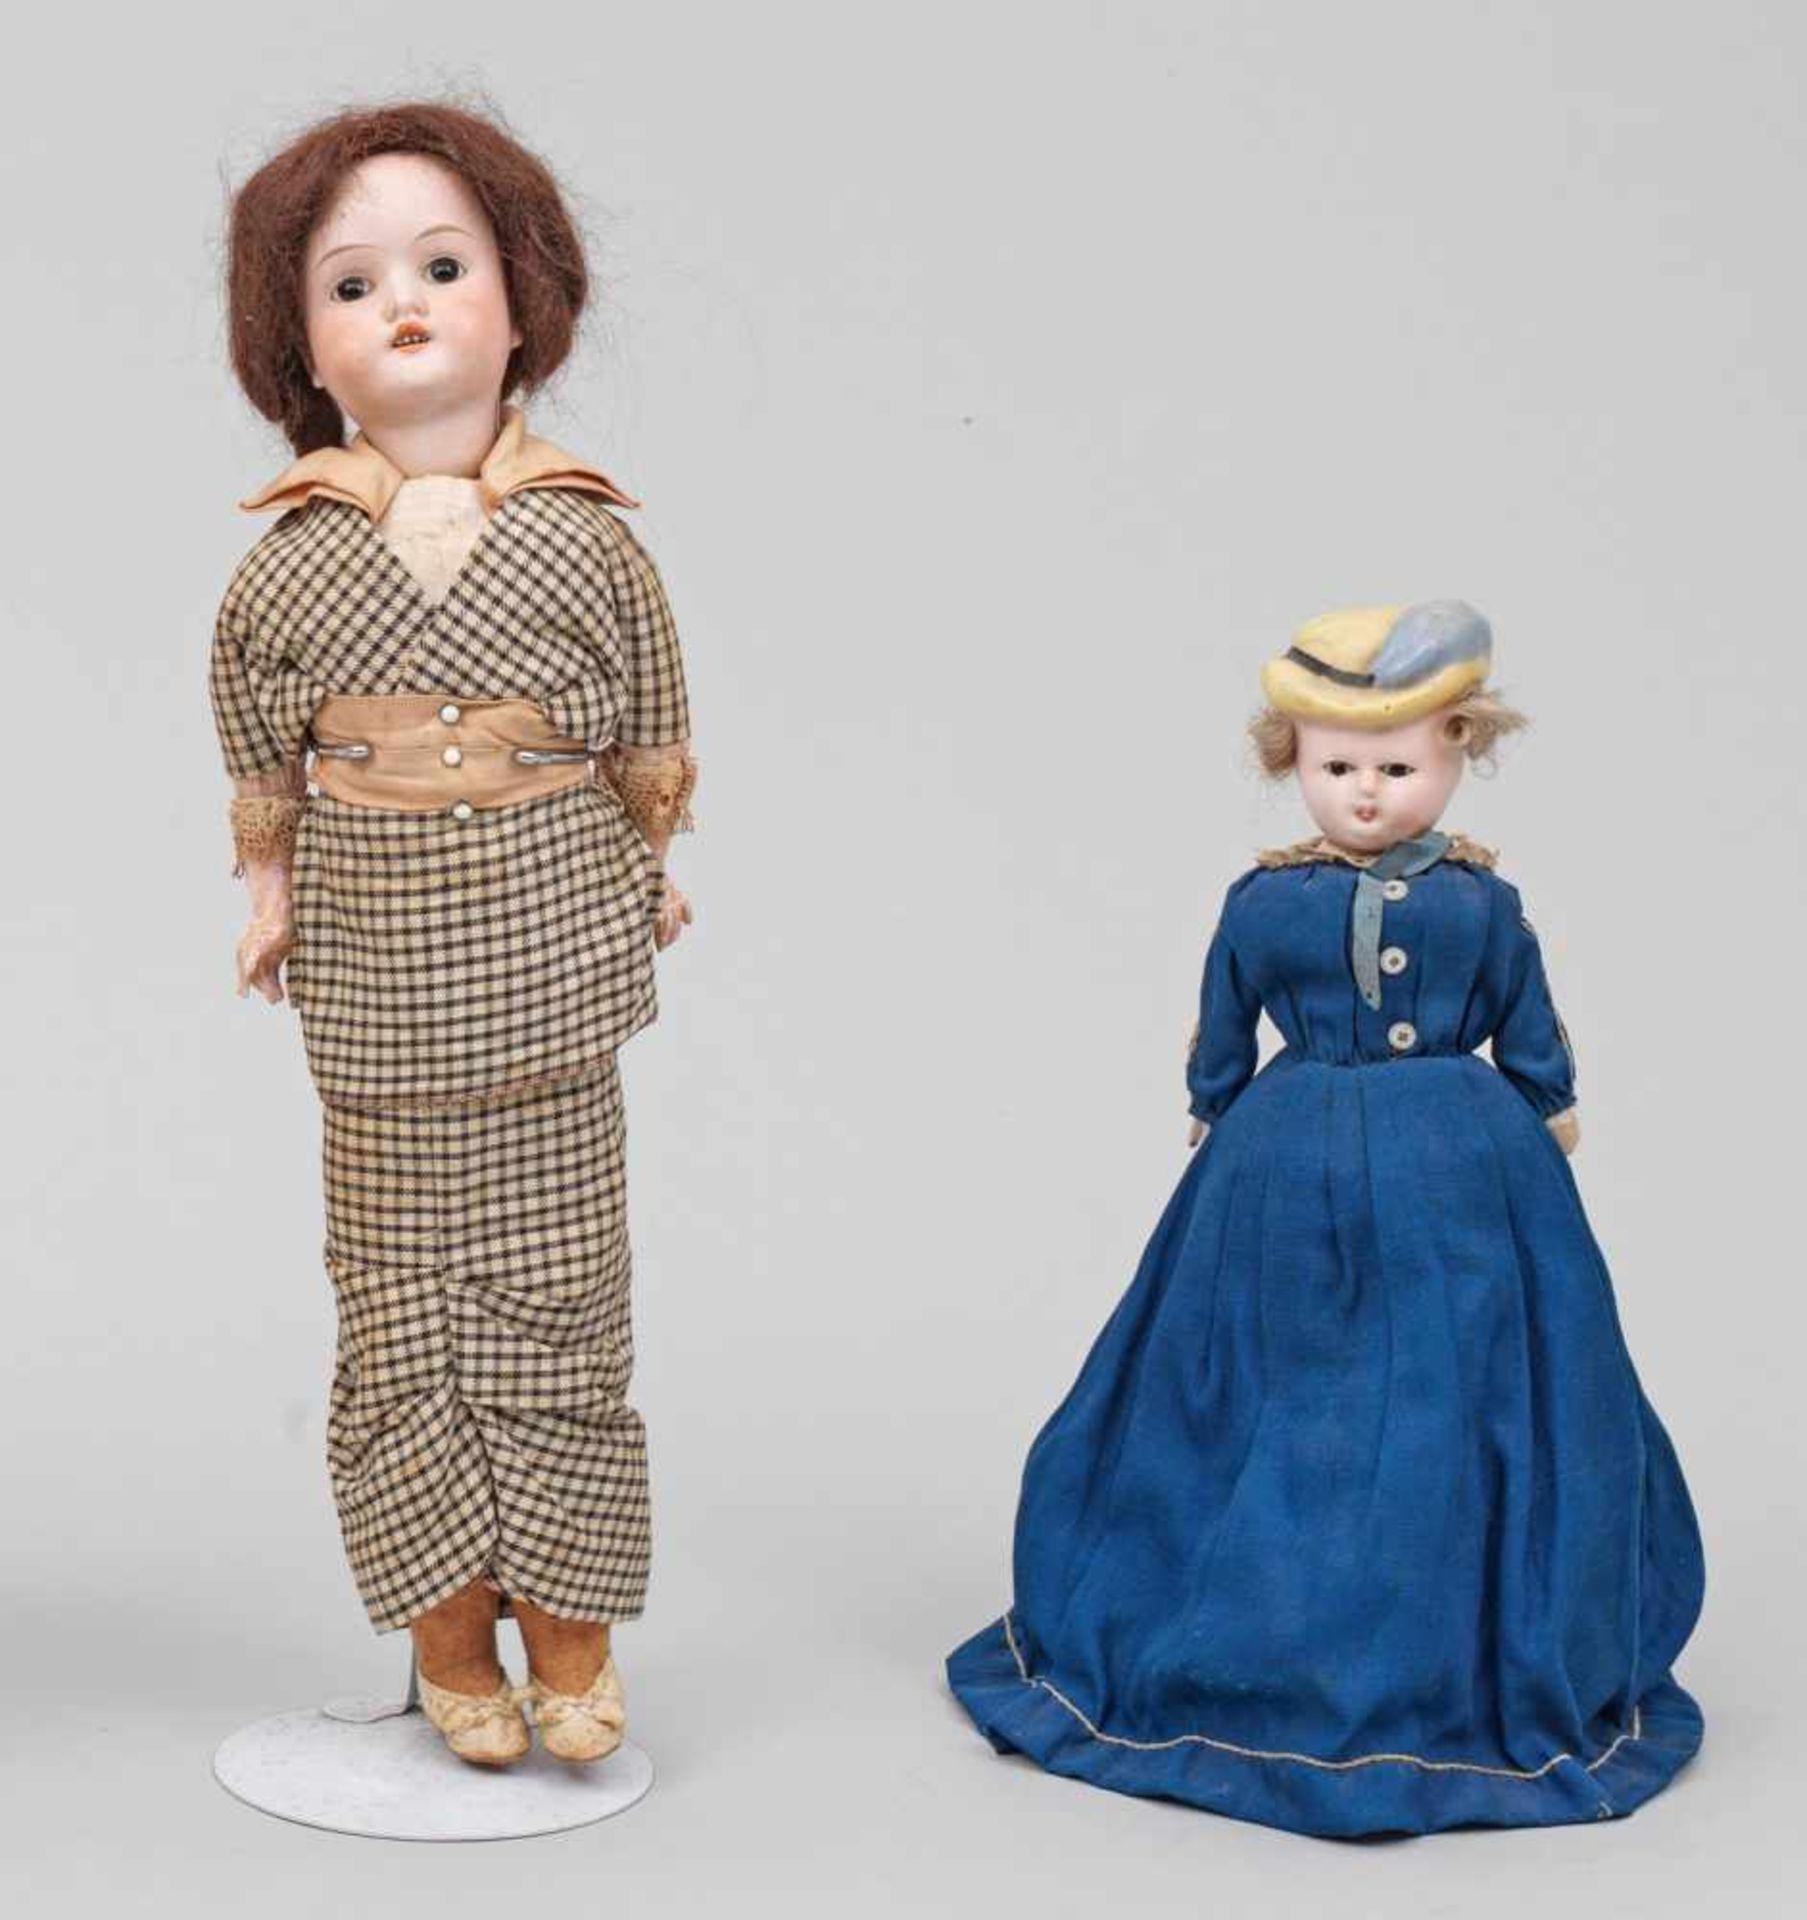 Seltene kleine "Bonnet Doll"und Modepuppe von Schoenau & Hofmeistersog. Pumpkin-Head Doll.